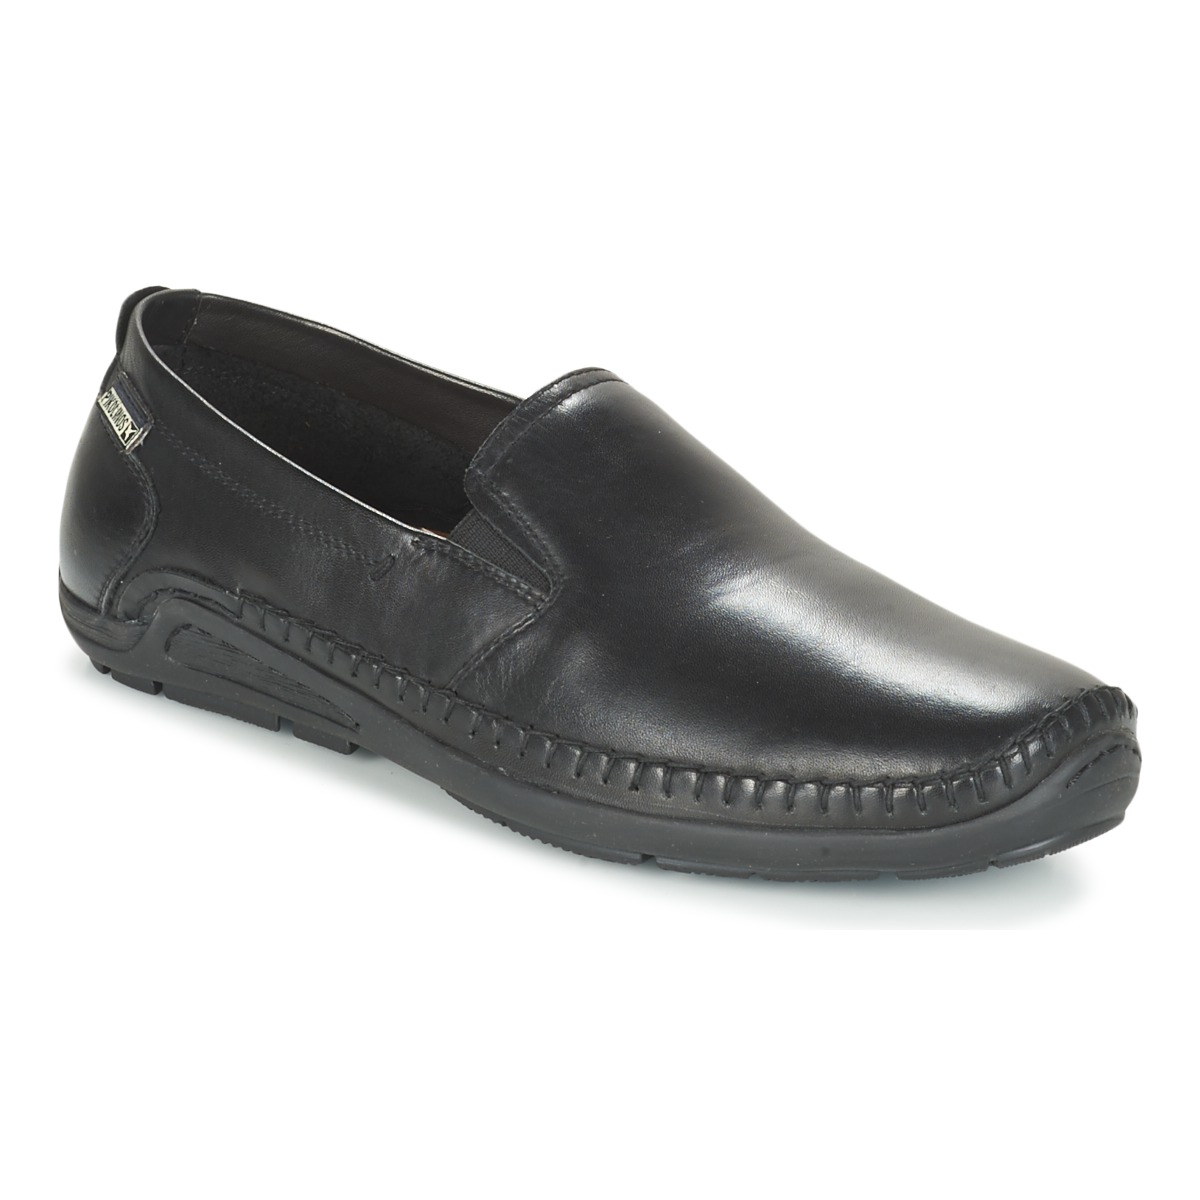 Pikolinos Azores Chaussures Hommes-confortable-Pantoufles Chaussures Basses Marron Nouveau 